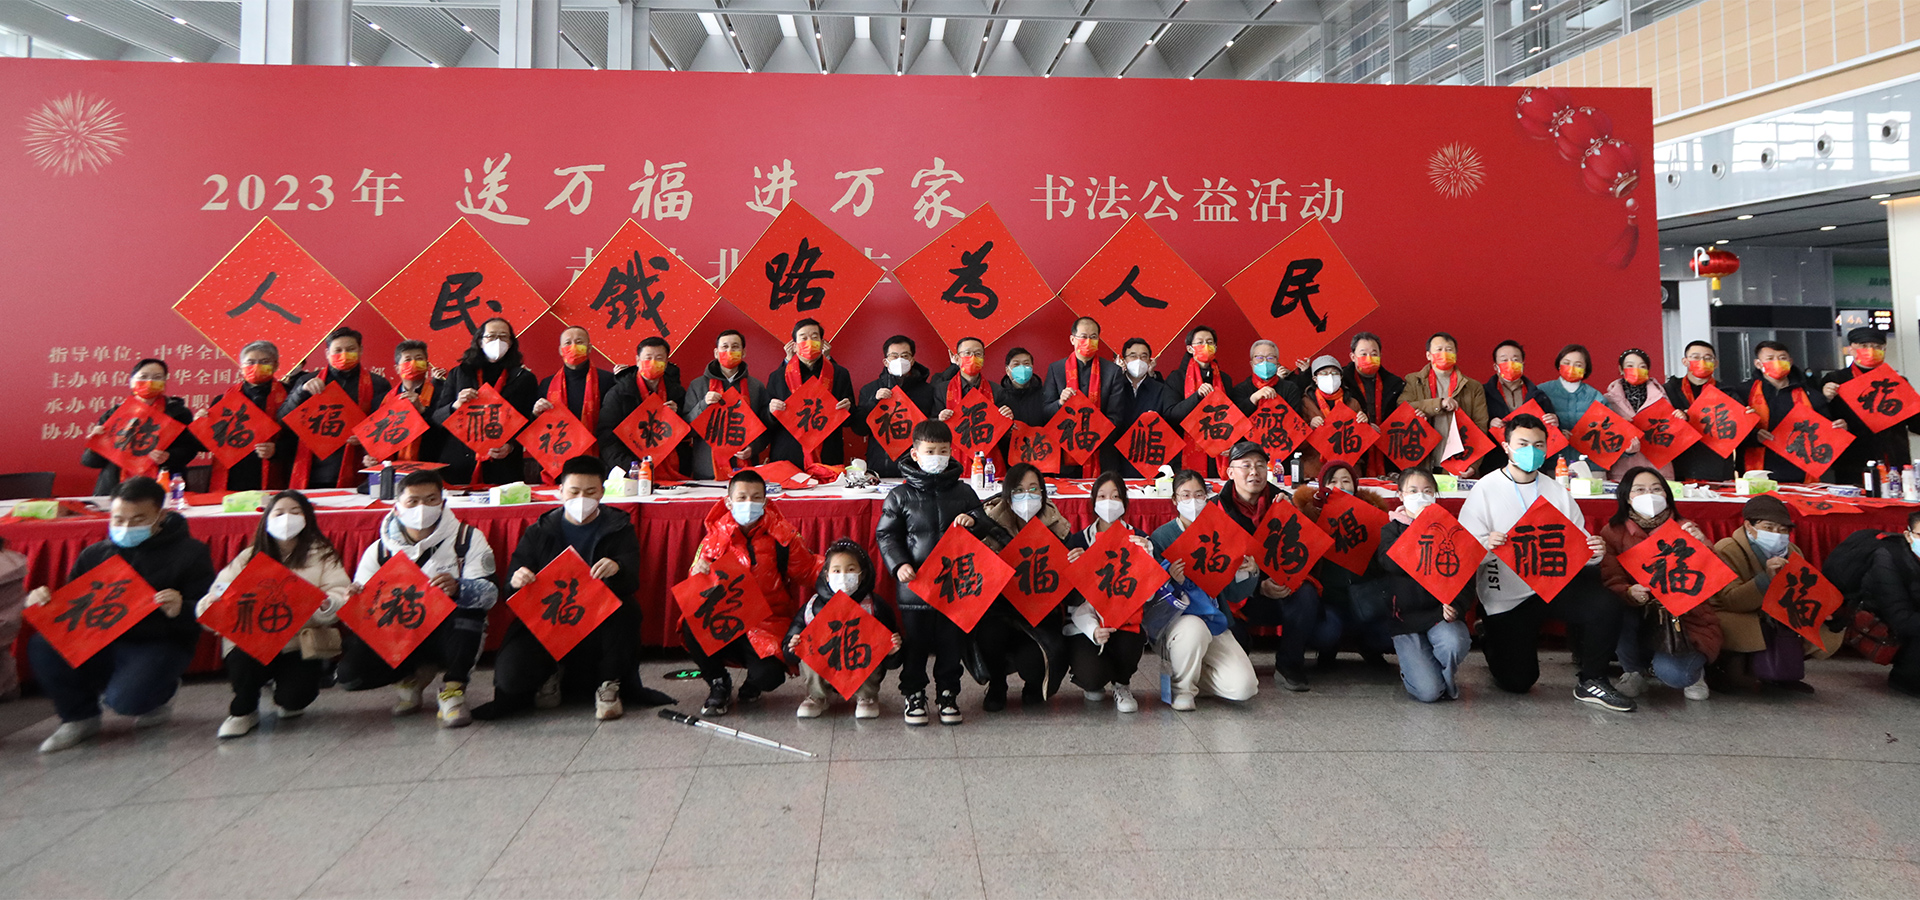 2023年“送万福、进万家”书法公益活动走进北京丰台站